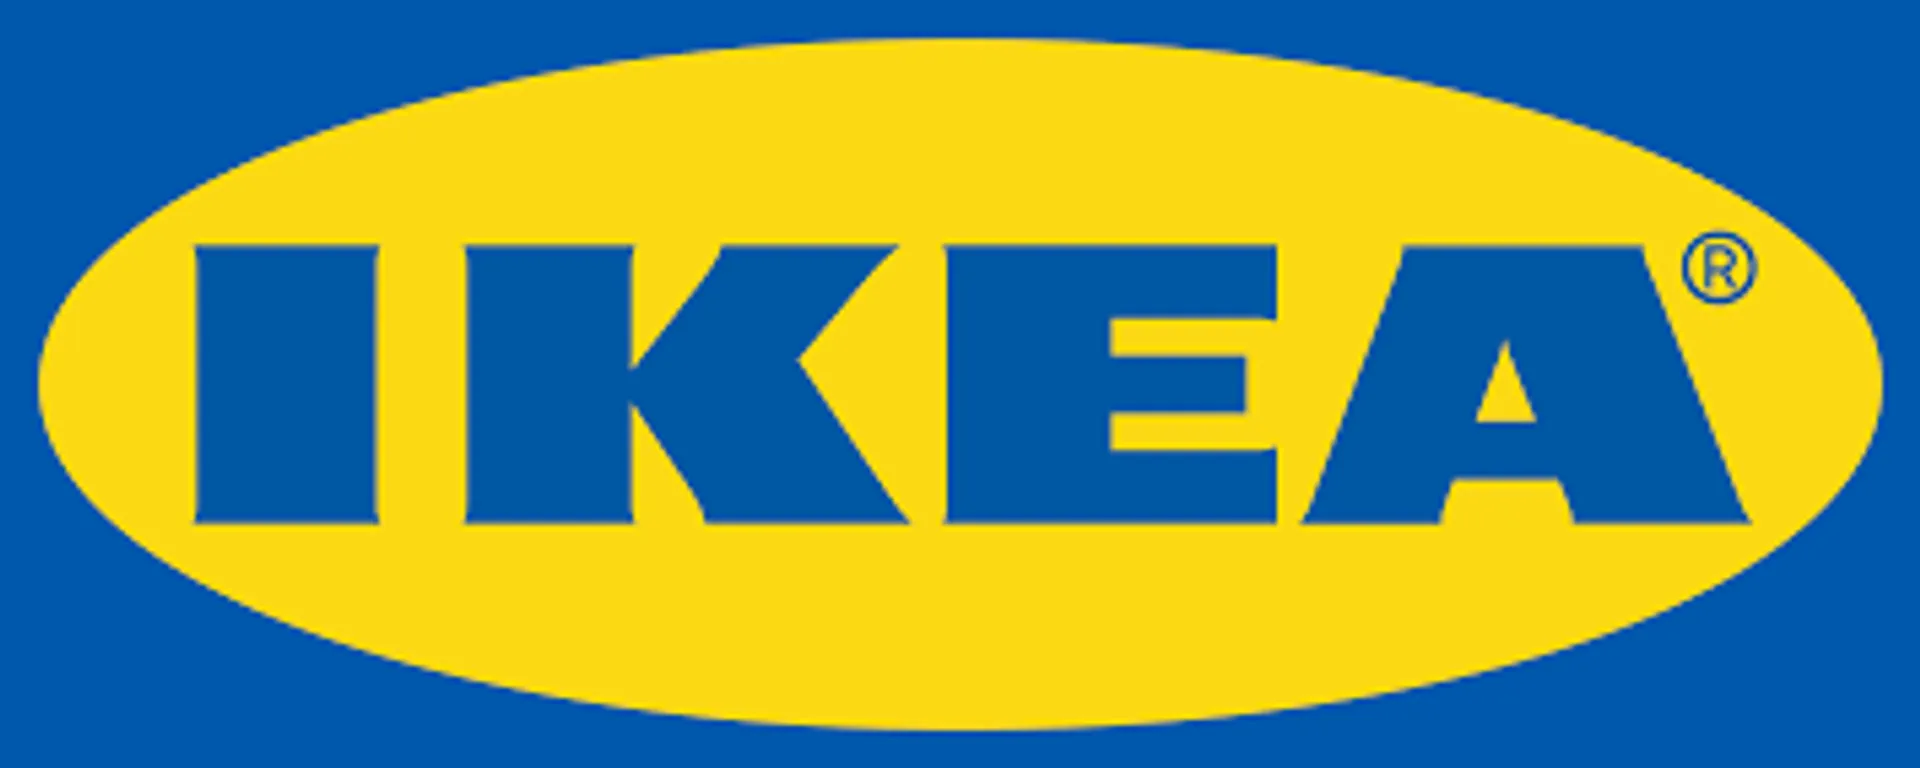 IKEA logo. Current weekly ad